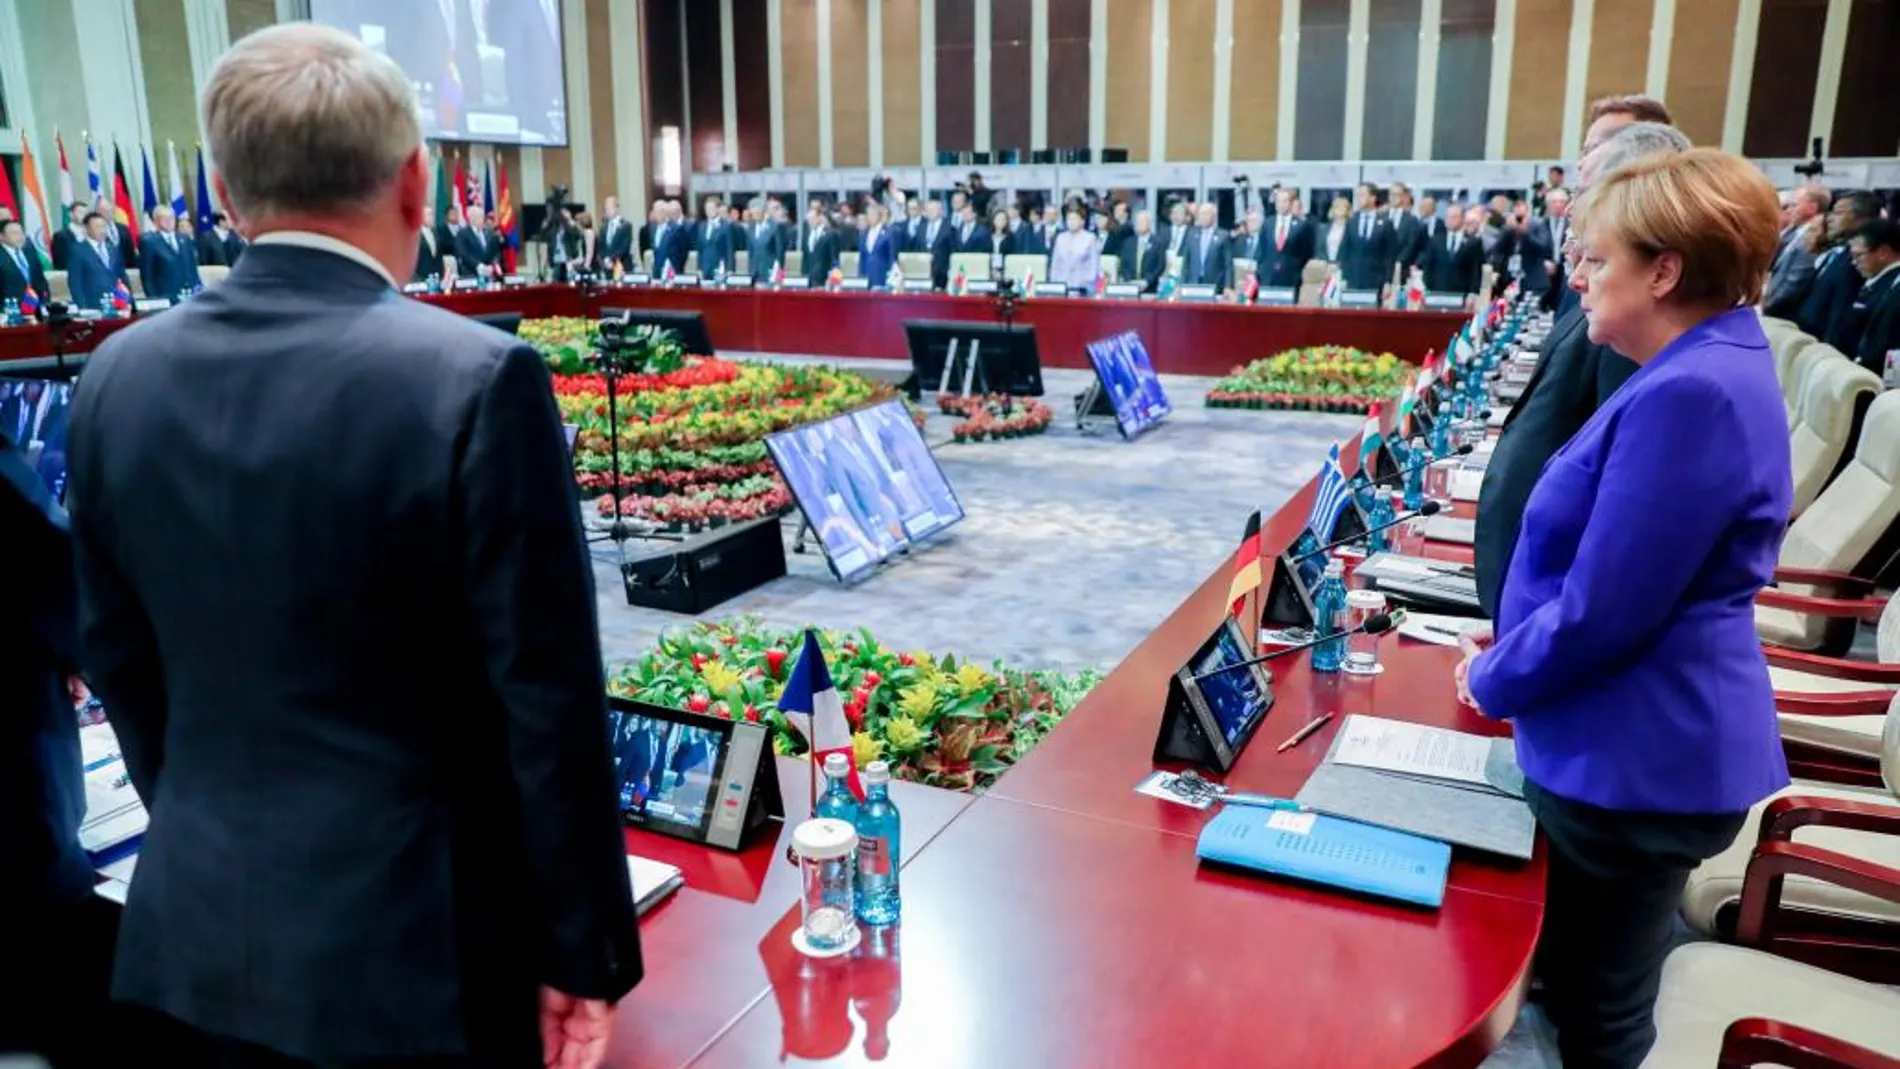 La canciller alemana Ángela Merkel, quien asiste junto al ministro de Relaciones Exteriores francés, Jean-Marc Ayrault, a una reunión de la Cumbre (ASEM) Asia-Europa en Ulan Bator (Mongolia) guardan un minuto de silencio por las víctimas de Niza